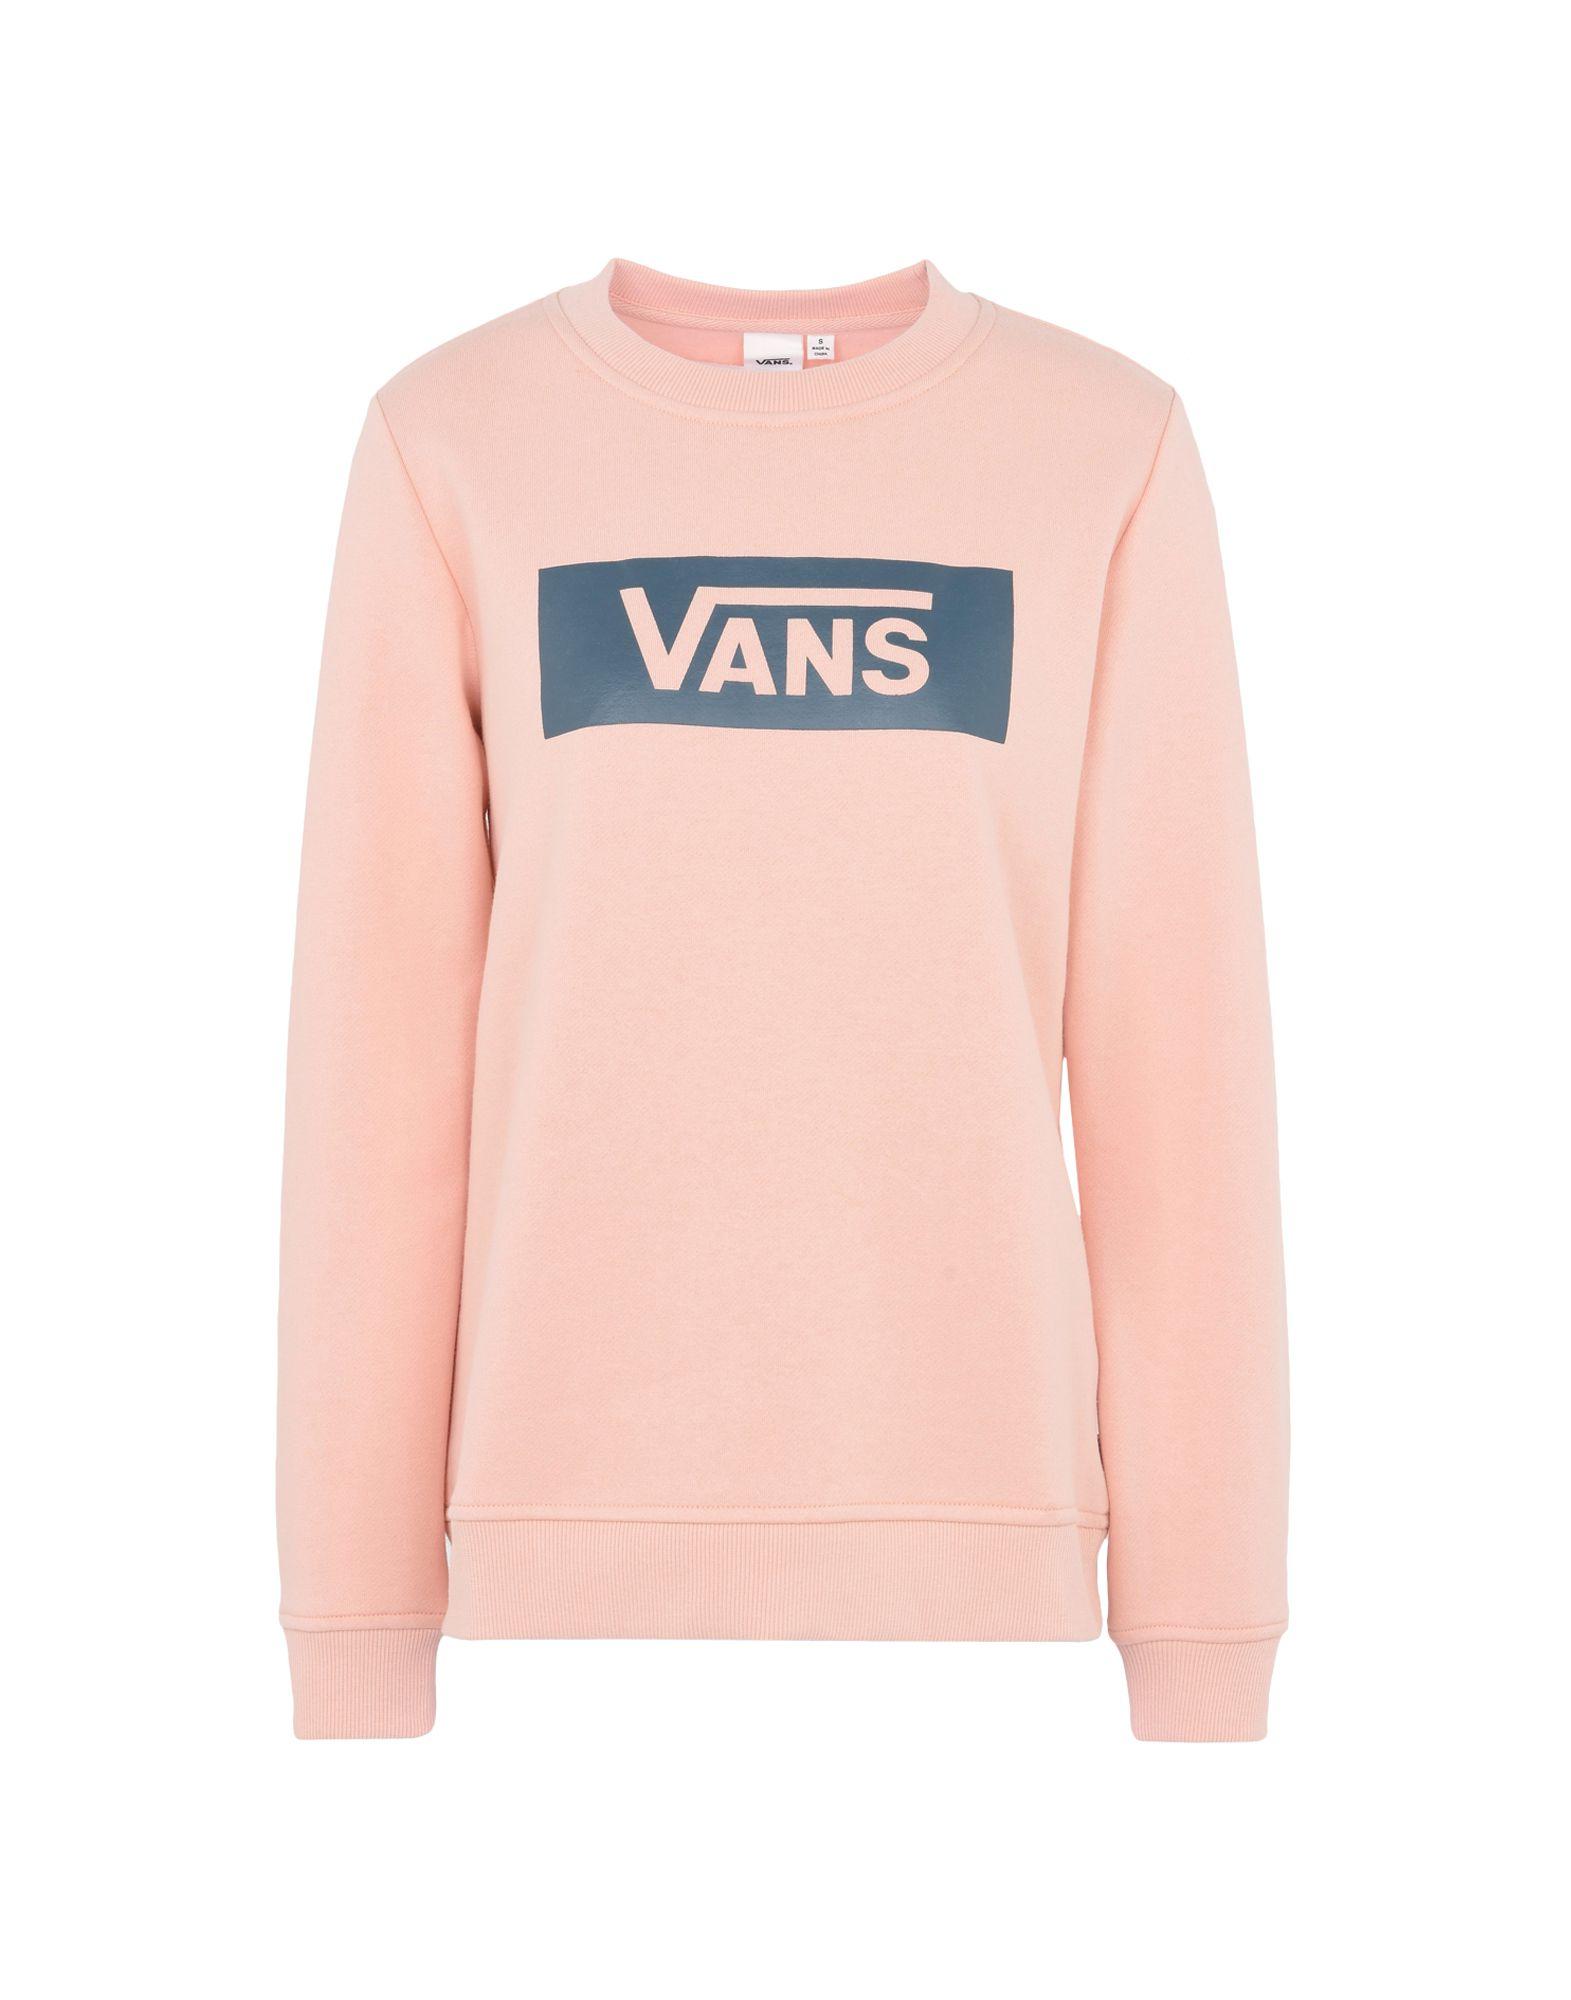 إدراج لوحة جبري vans pink sweater 